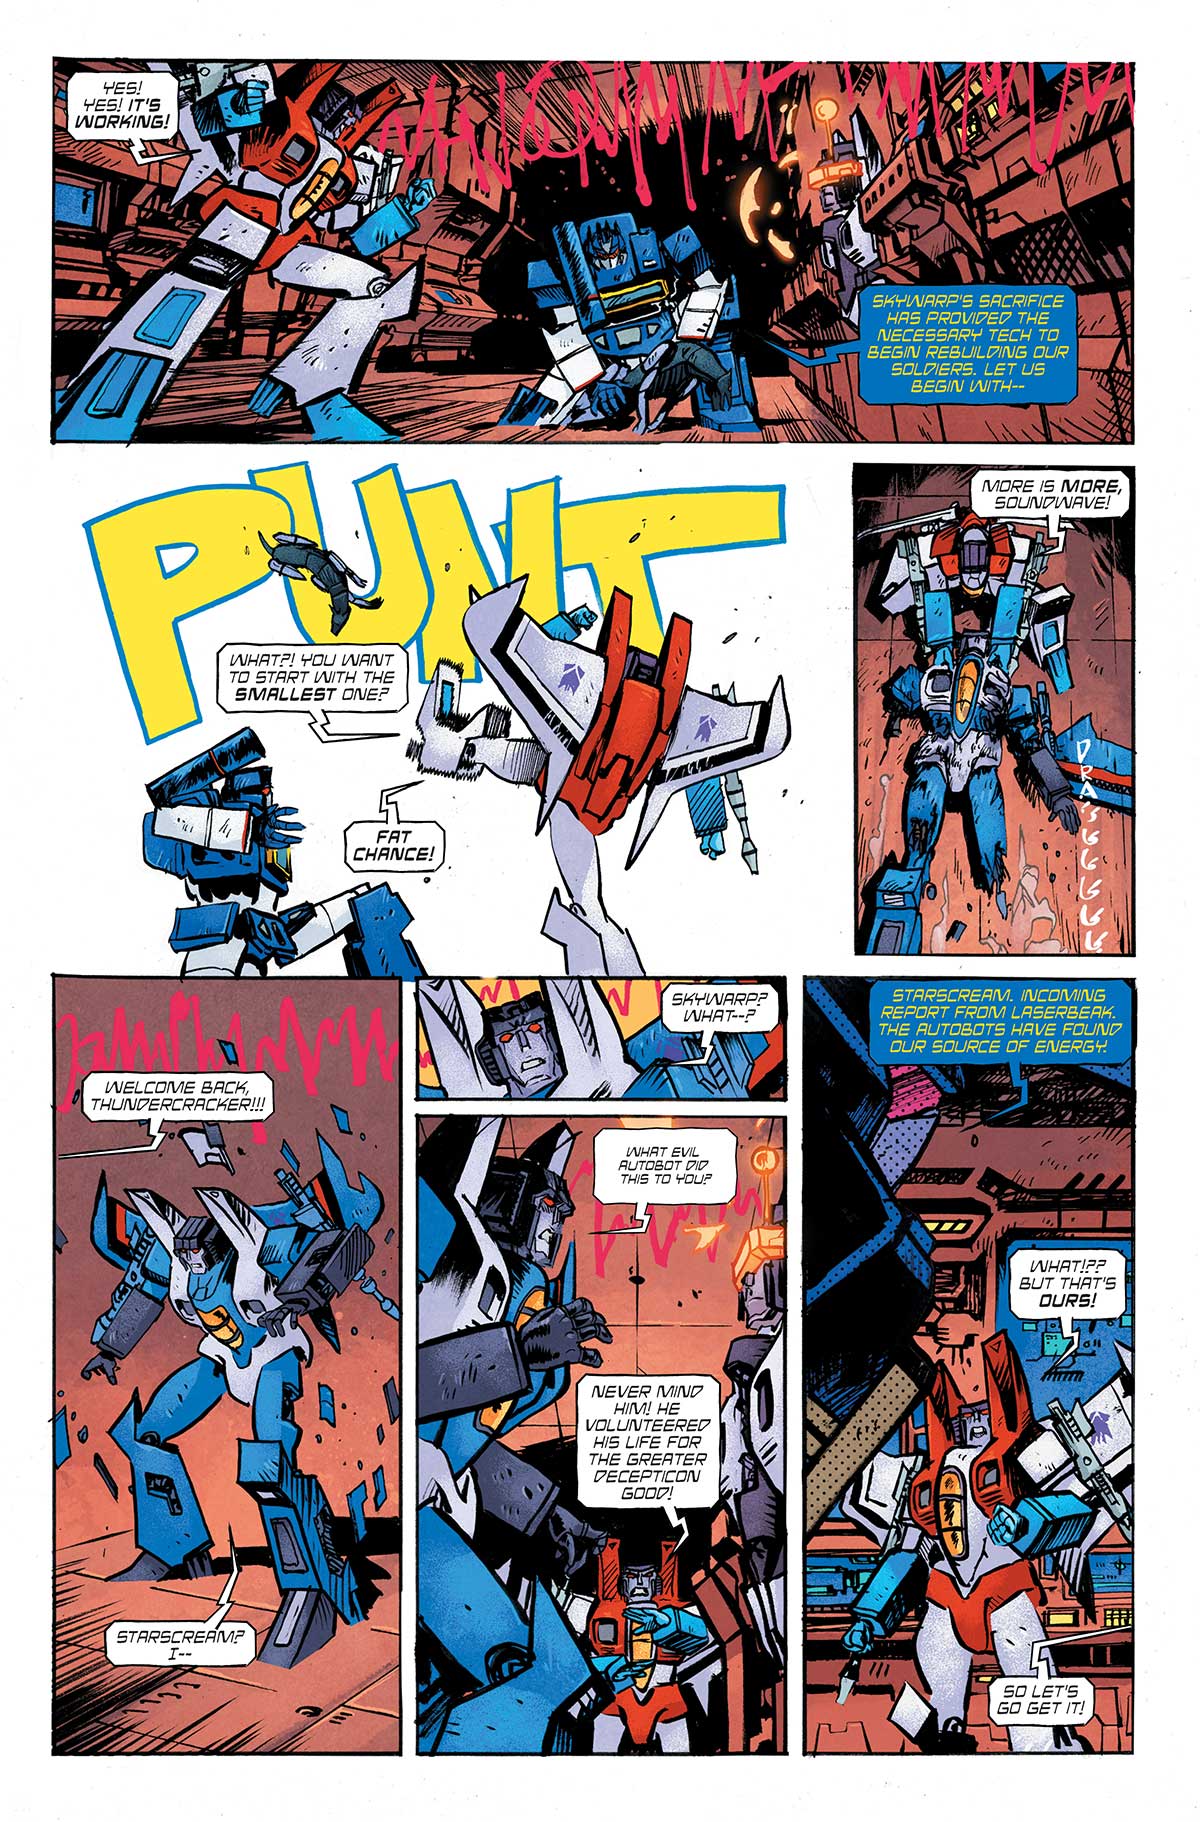 Sidor från Transformers #5